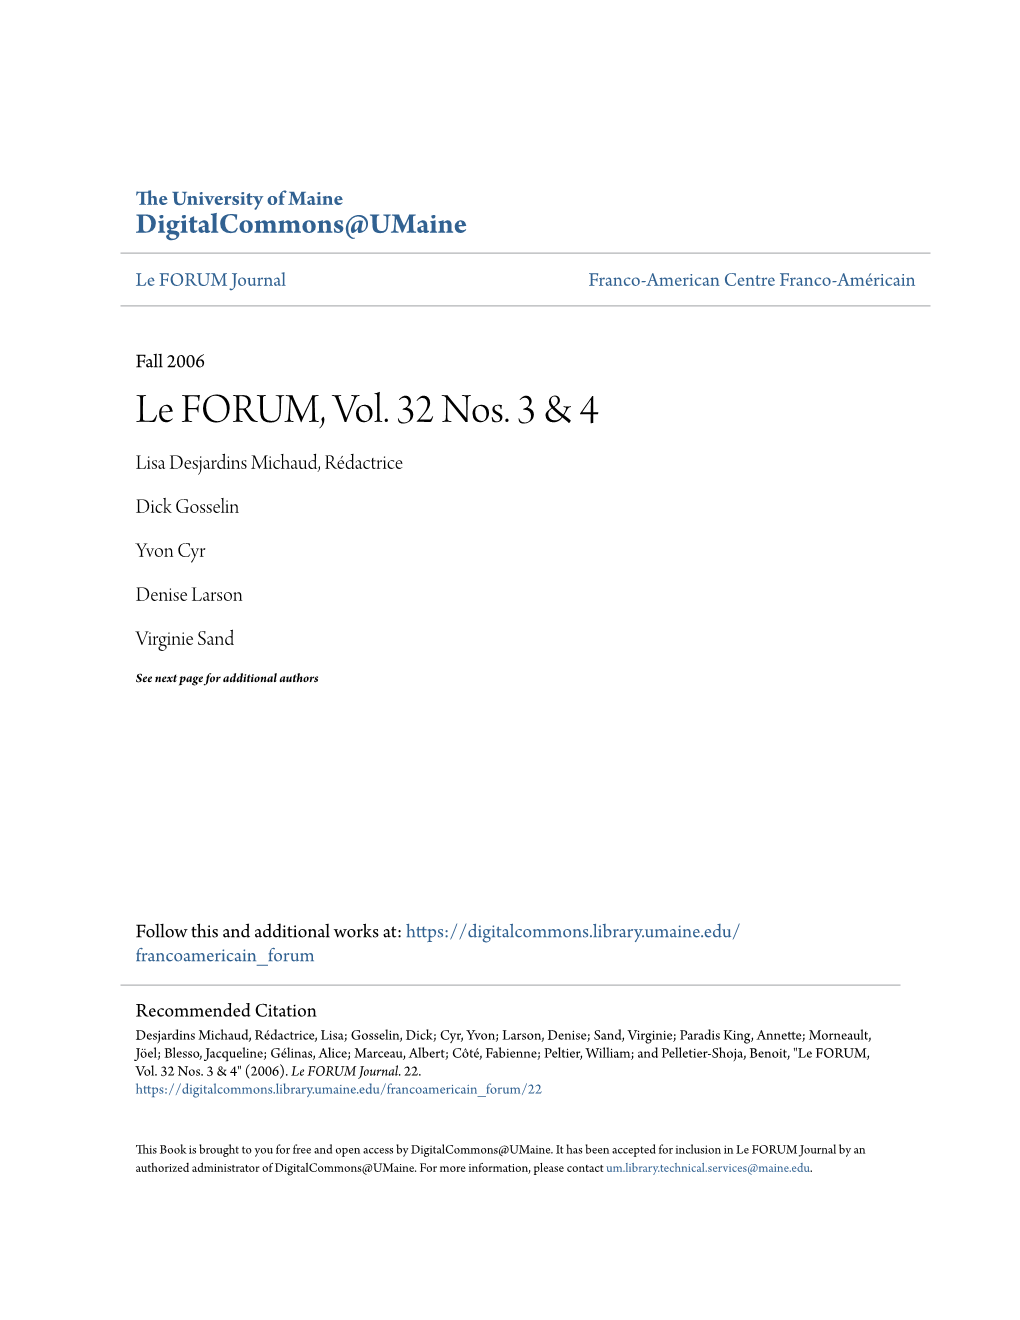 Le FORUM, Vol. 32 Nos. 3 & 4